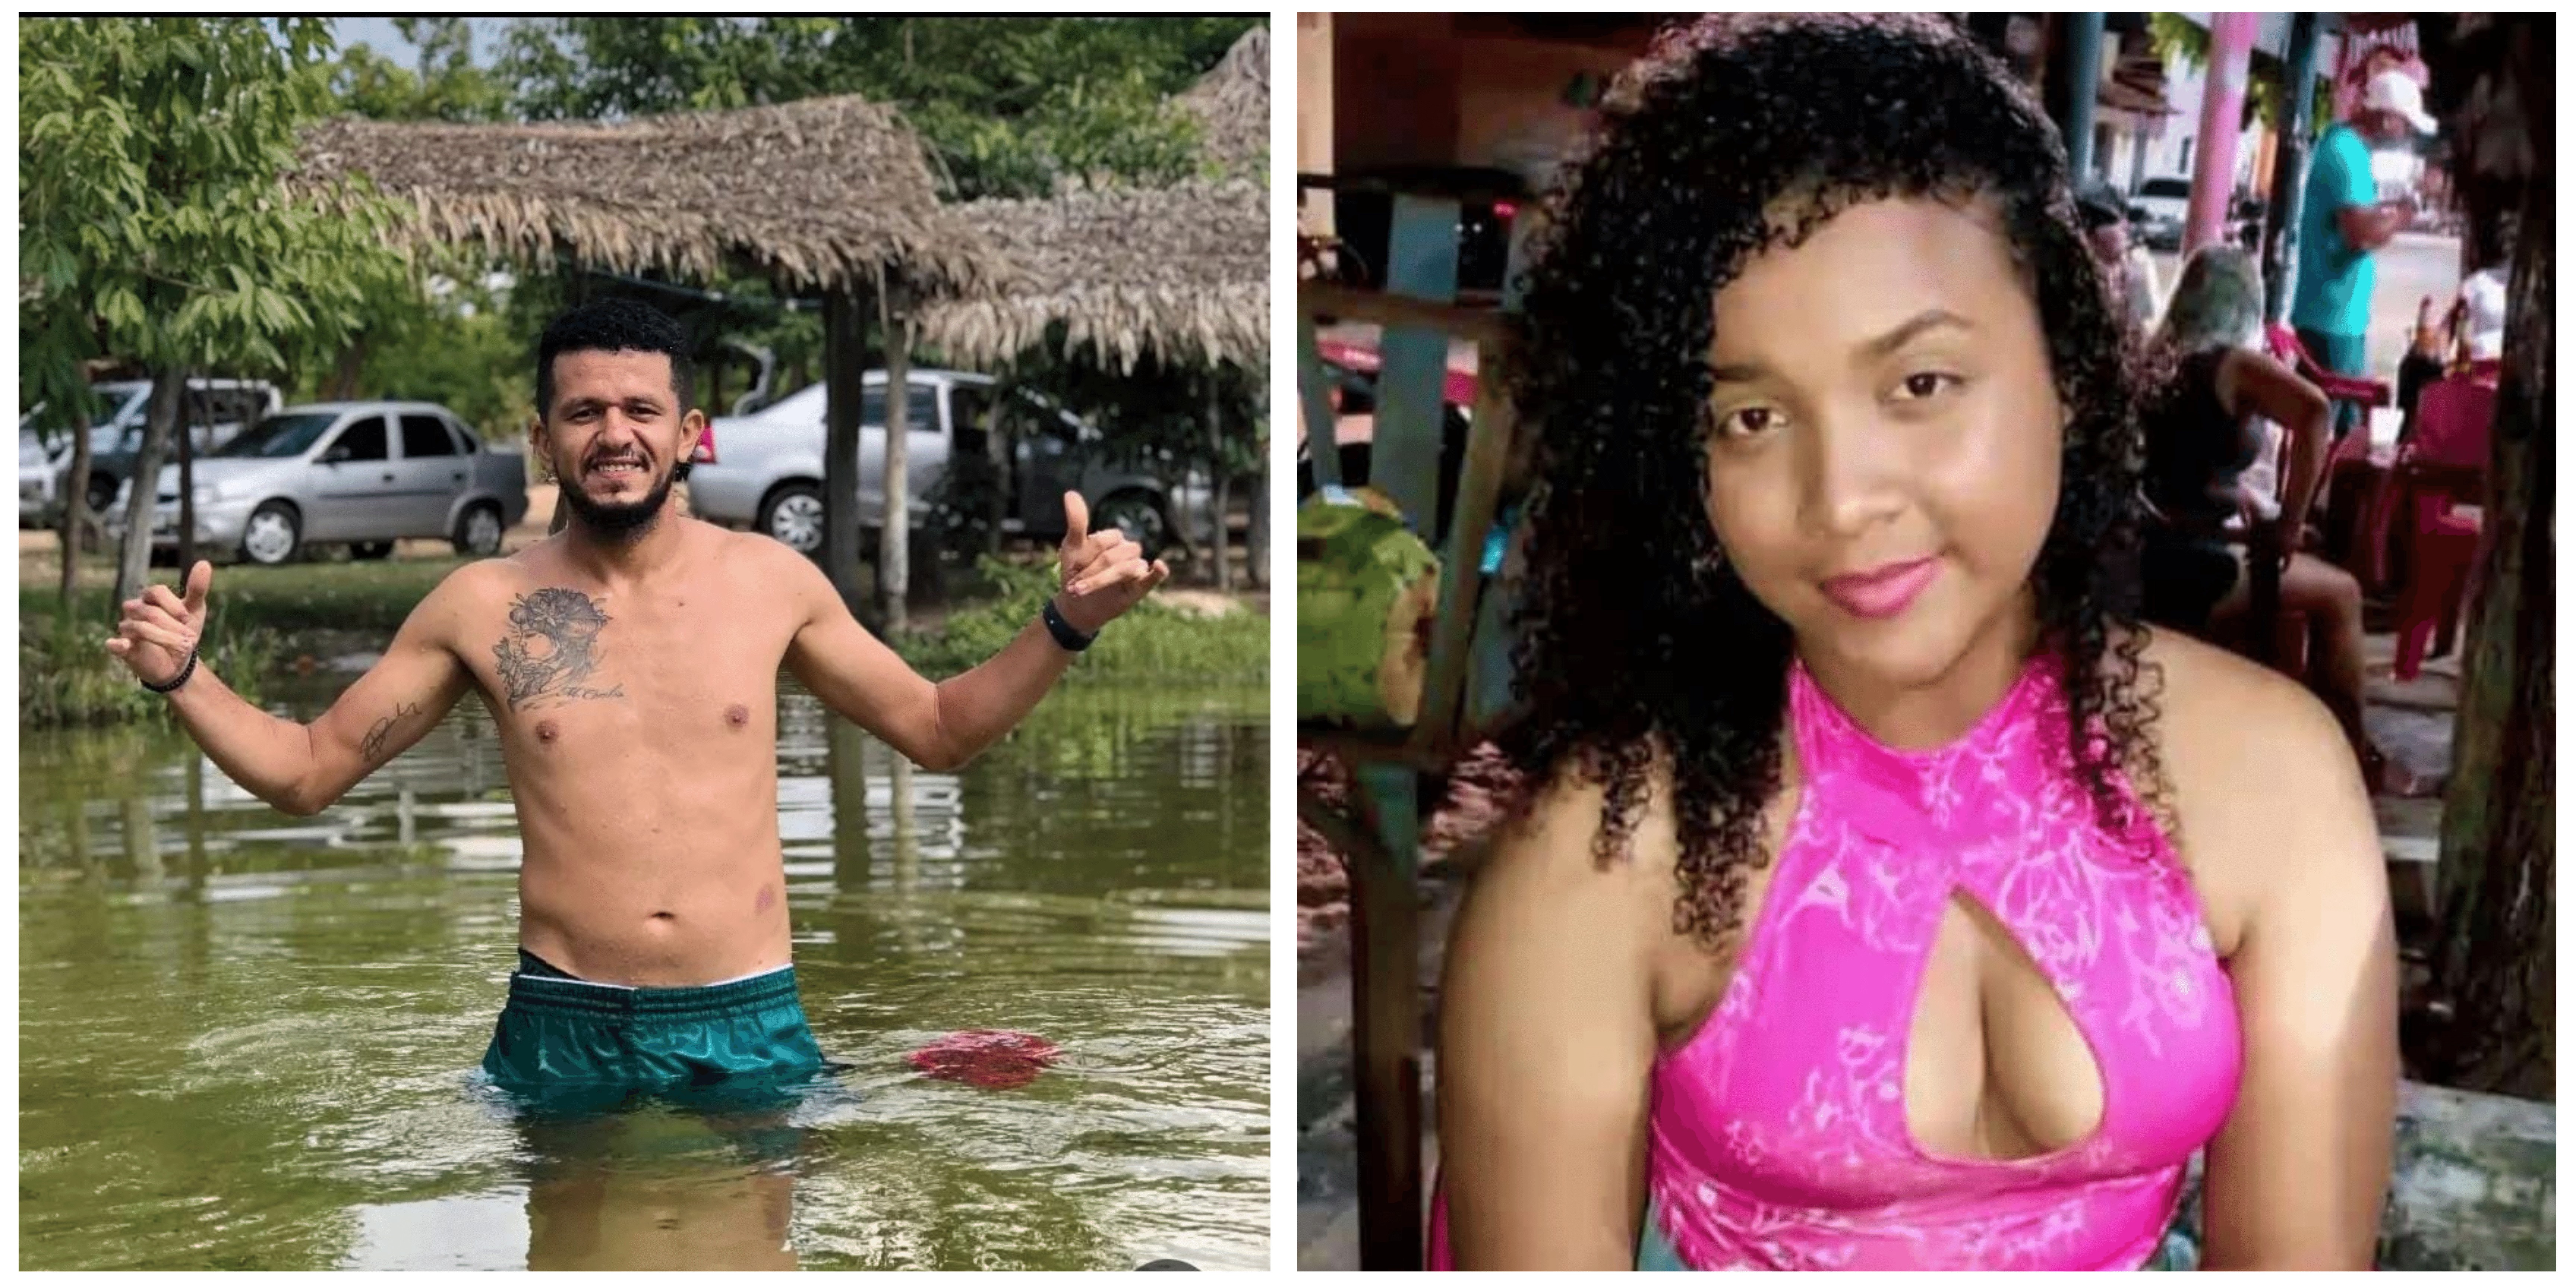 Suspeito de matar homem e mulher durante festa é preso em Caxias